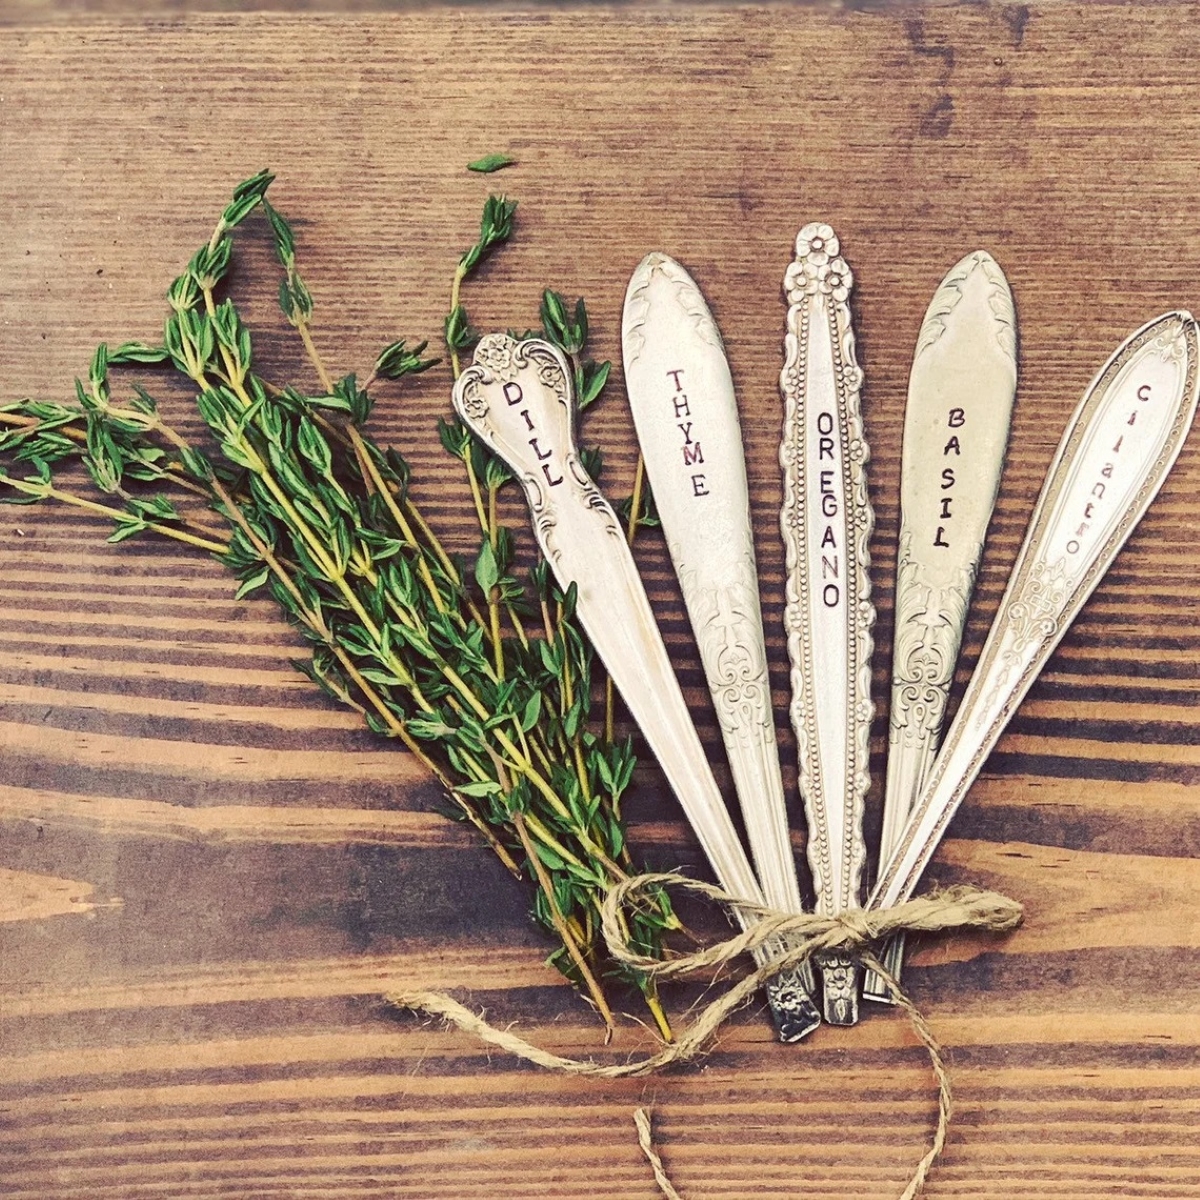 free ways to start a garden - utensil handle garden labels